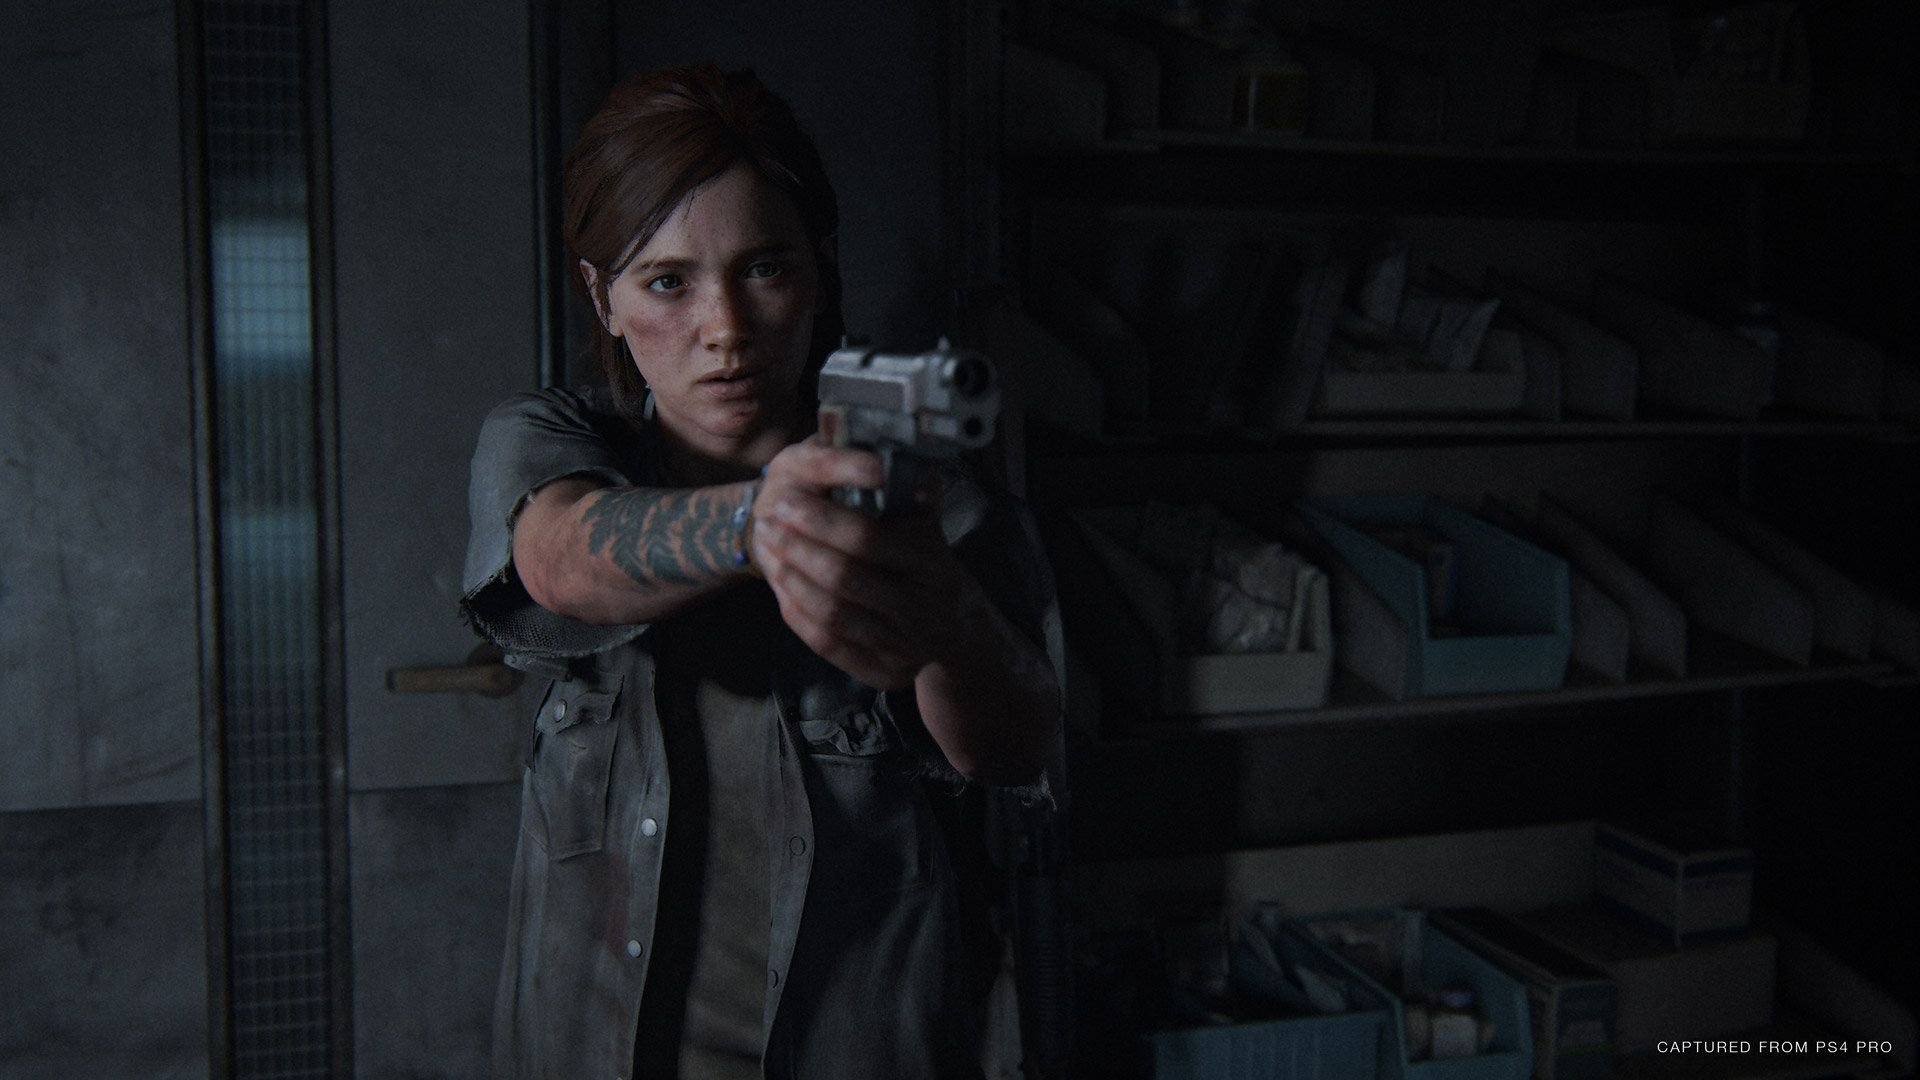 Screen z gry The Last of US Part Two. Główna bohaterka celuje z broni w ciemnym pomieszczeniu.